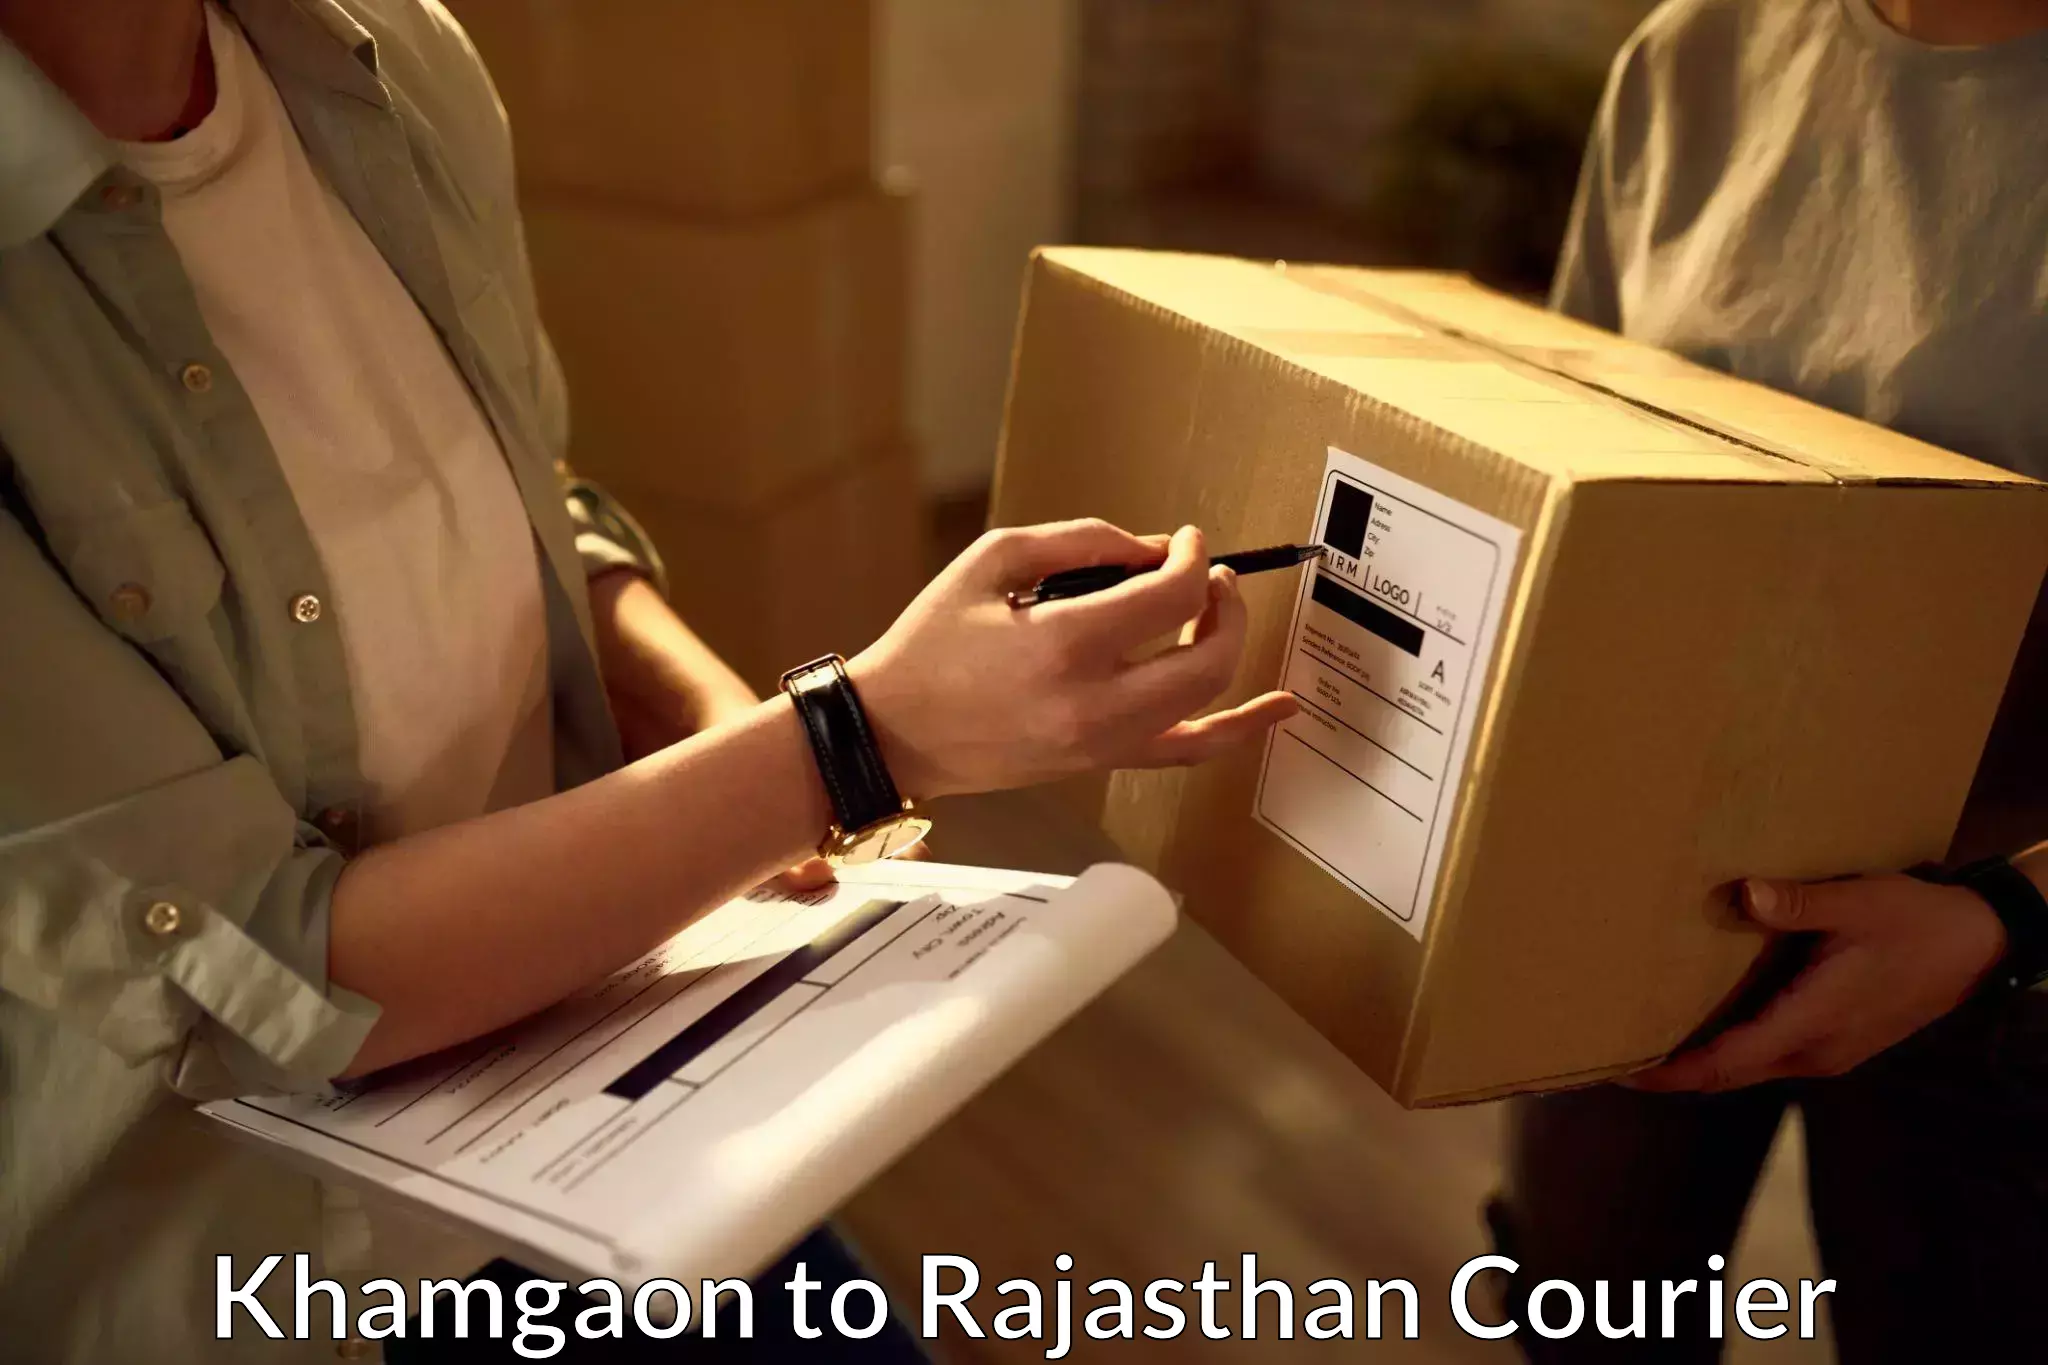 Dynamic courier operations Khamgaon to Nainwa